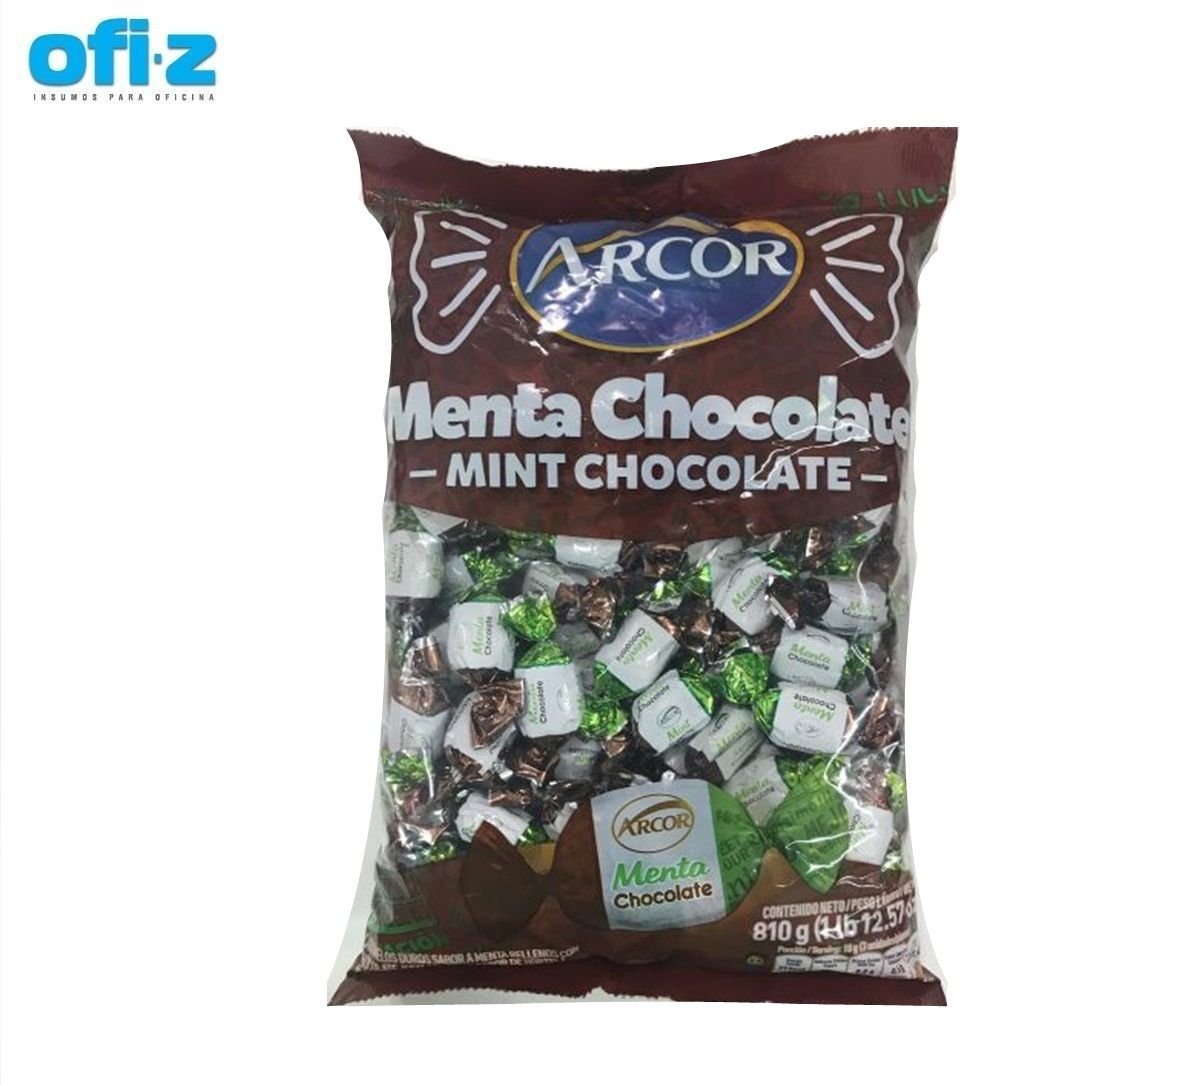 [ELIMINADO] Caramelo Arcor menta chocolate 810G